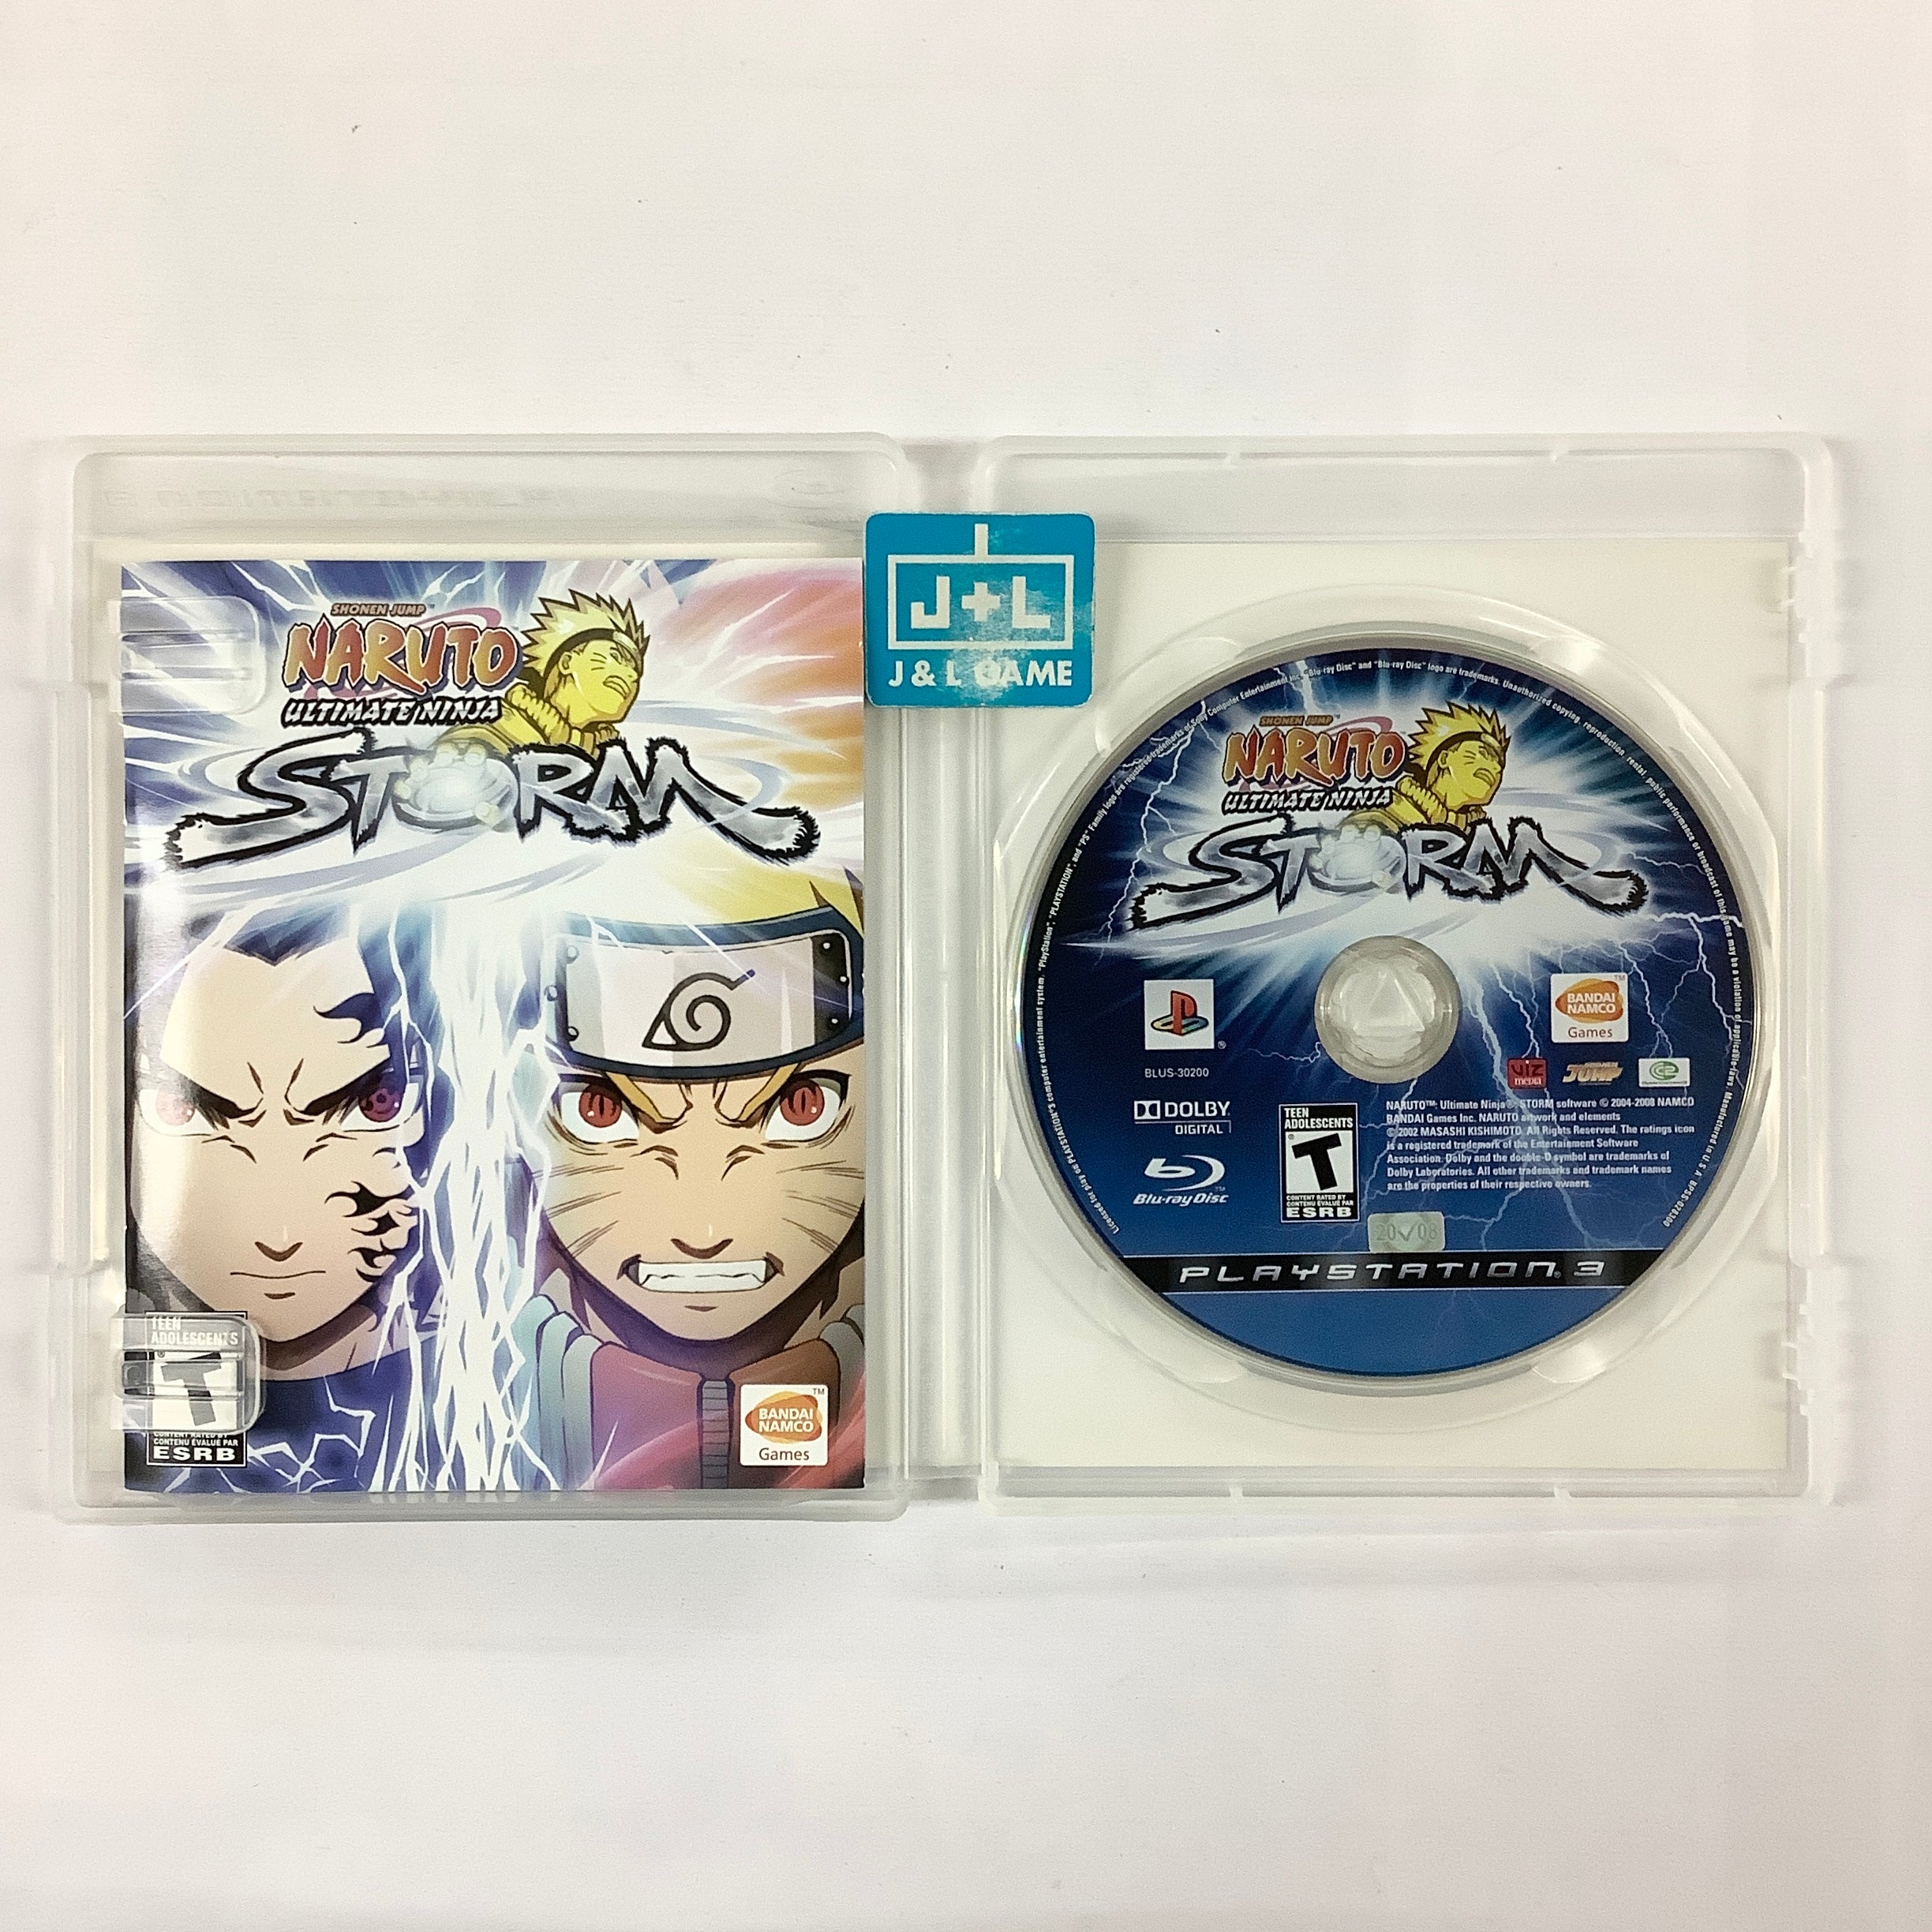 Naruto: Ultimate Ninja Storm - (PS3) PlayStation 3 [Pre-Owned] Video Games Namco Bandai Games   